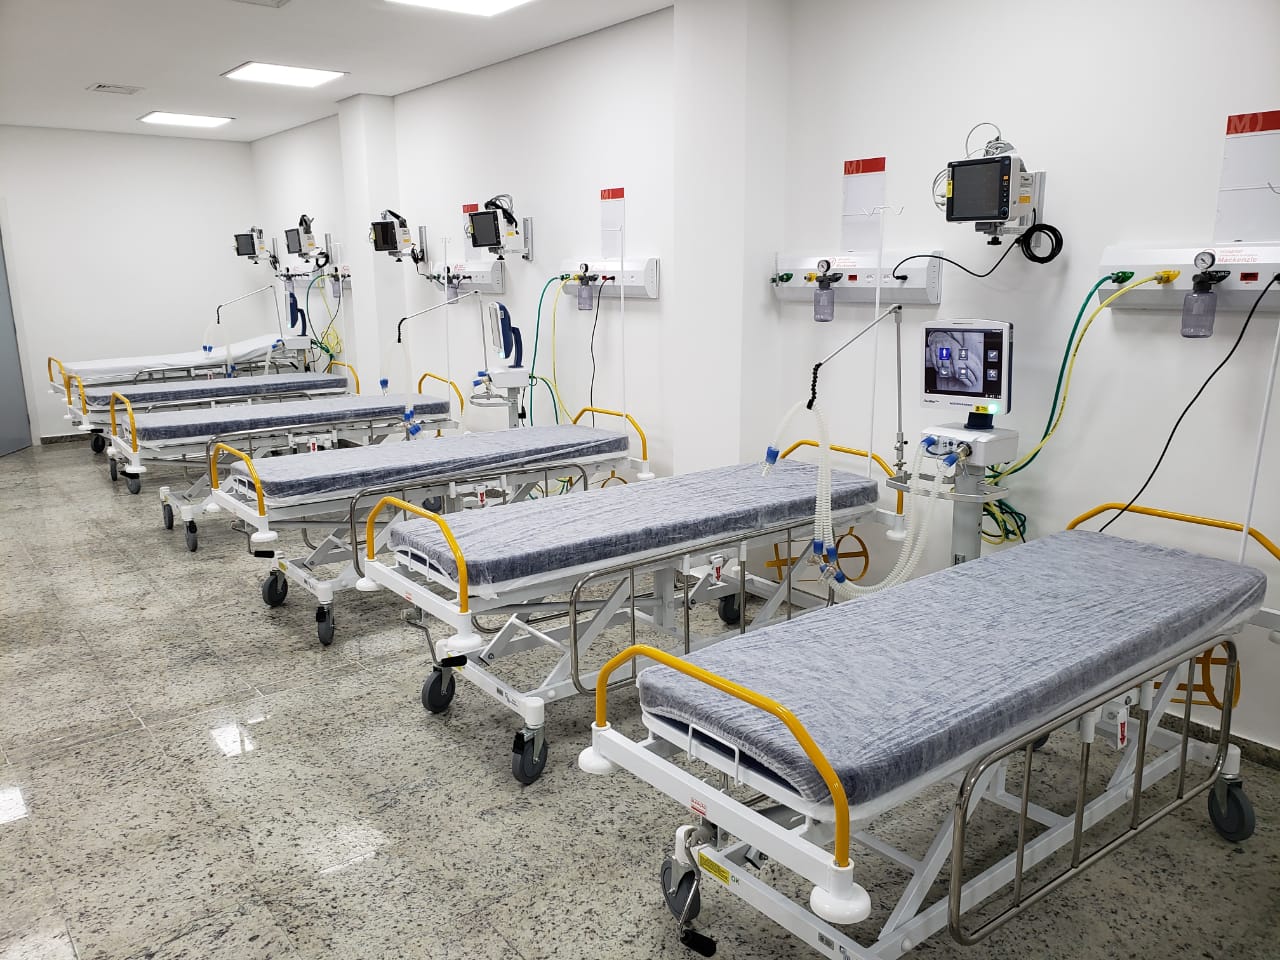 Hospital Evangélico teve 10% a mais no total de repasses do SUS com apoio  da Prefeitura - Prefeitura de Curitiba